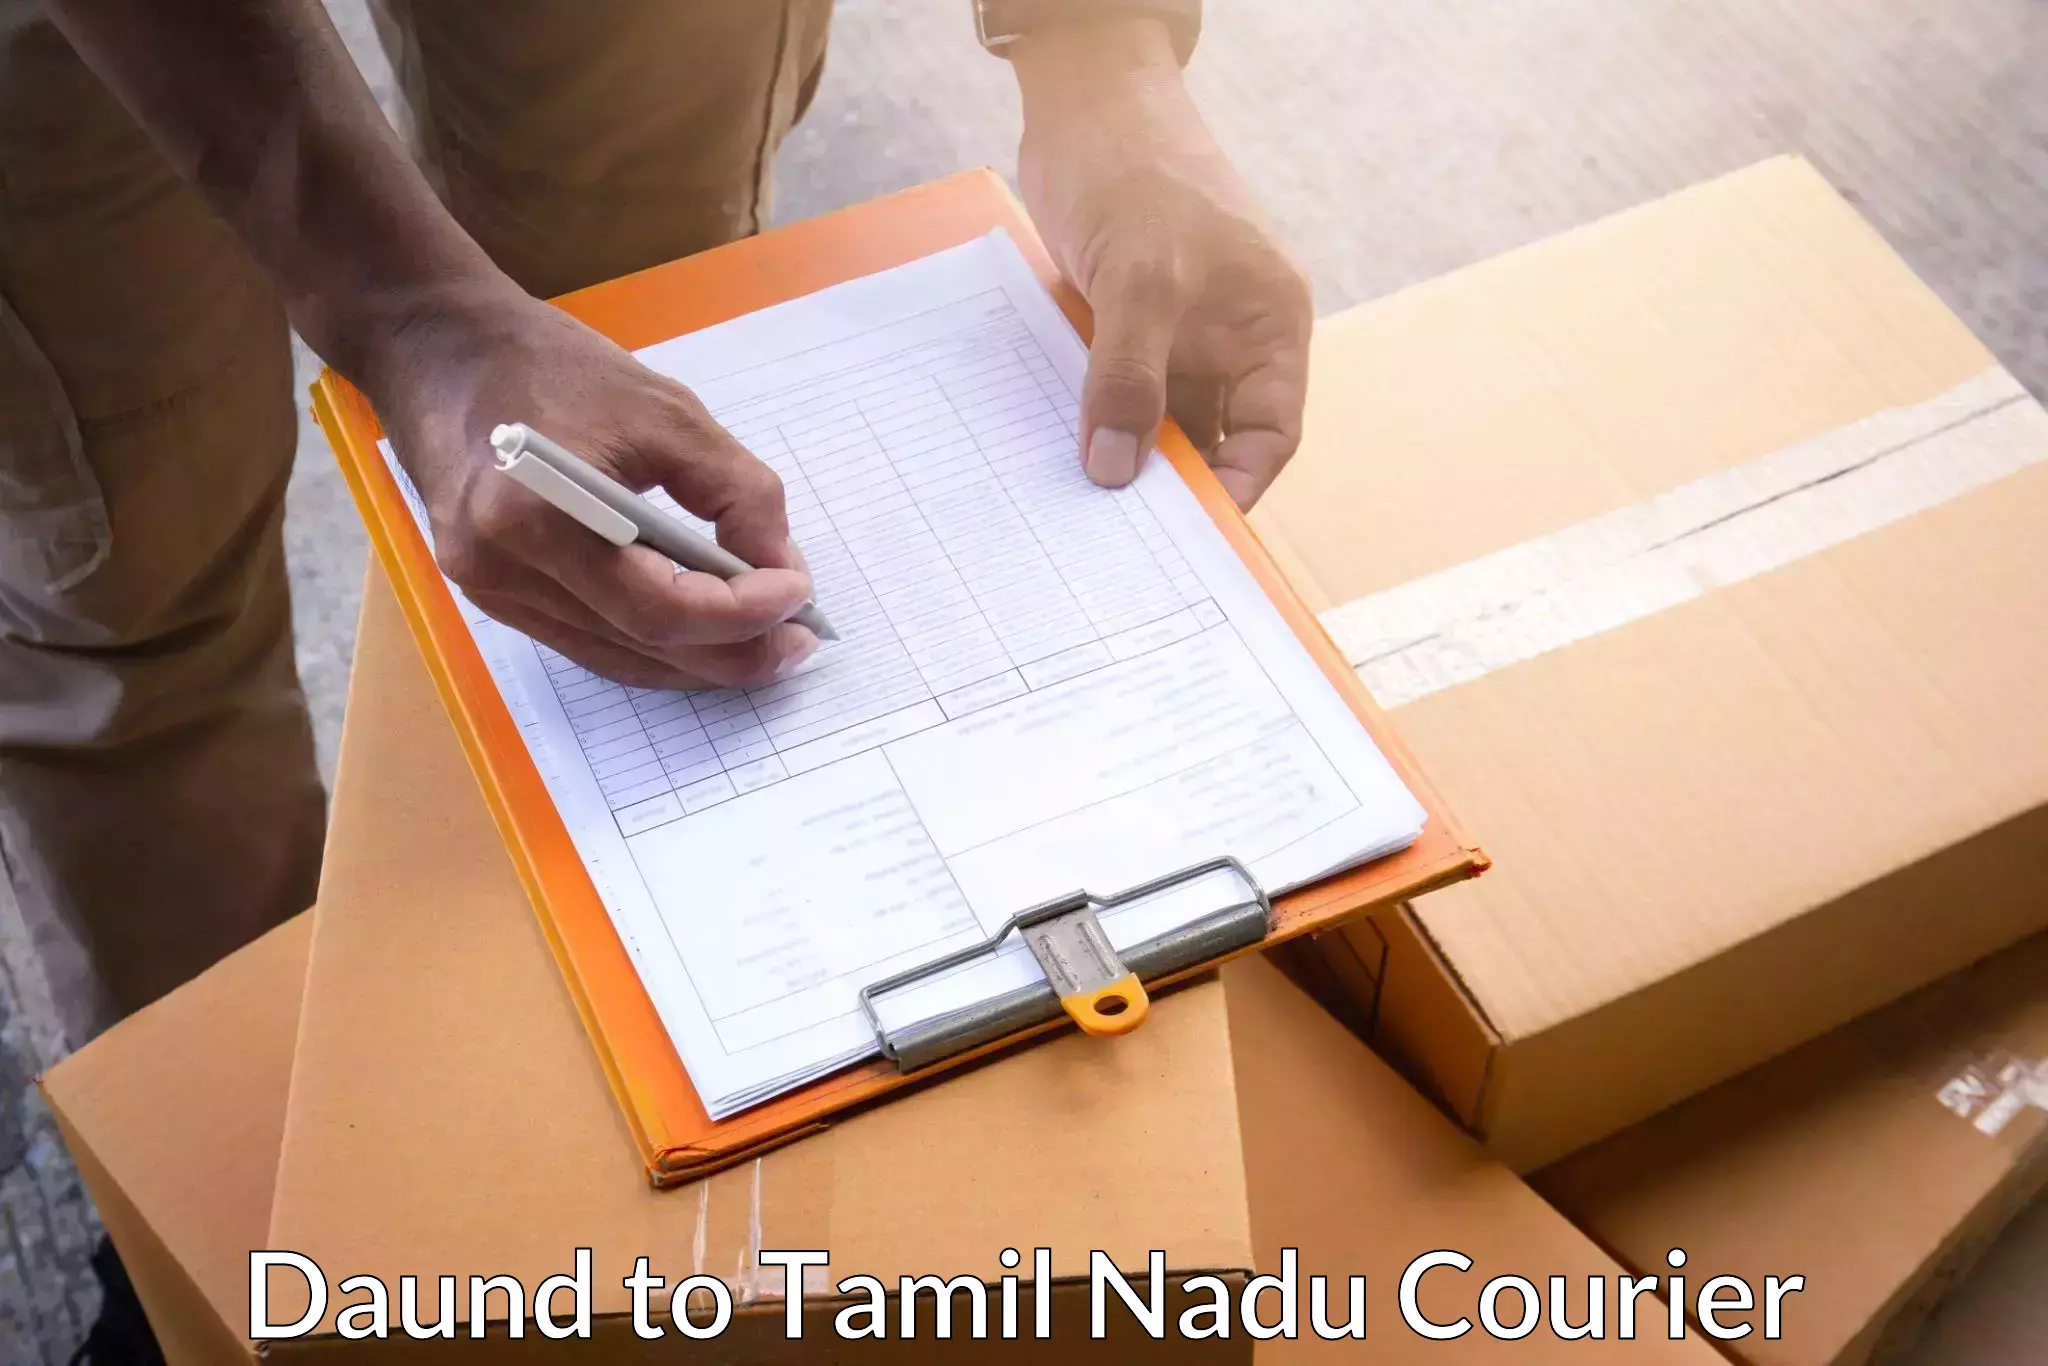 Next-generation courier services Daund to Krishnagiri